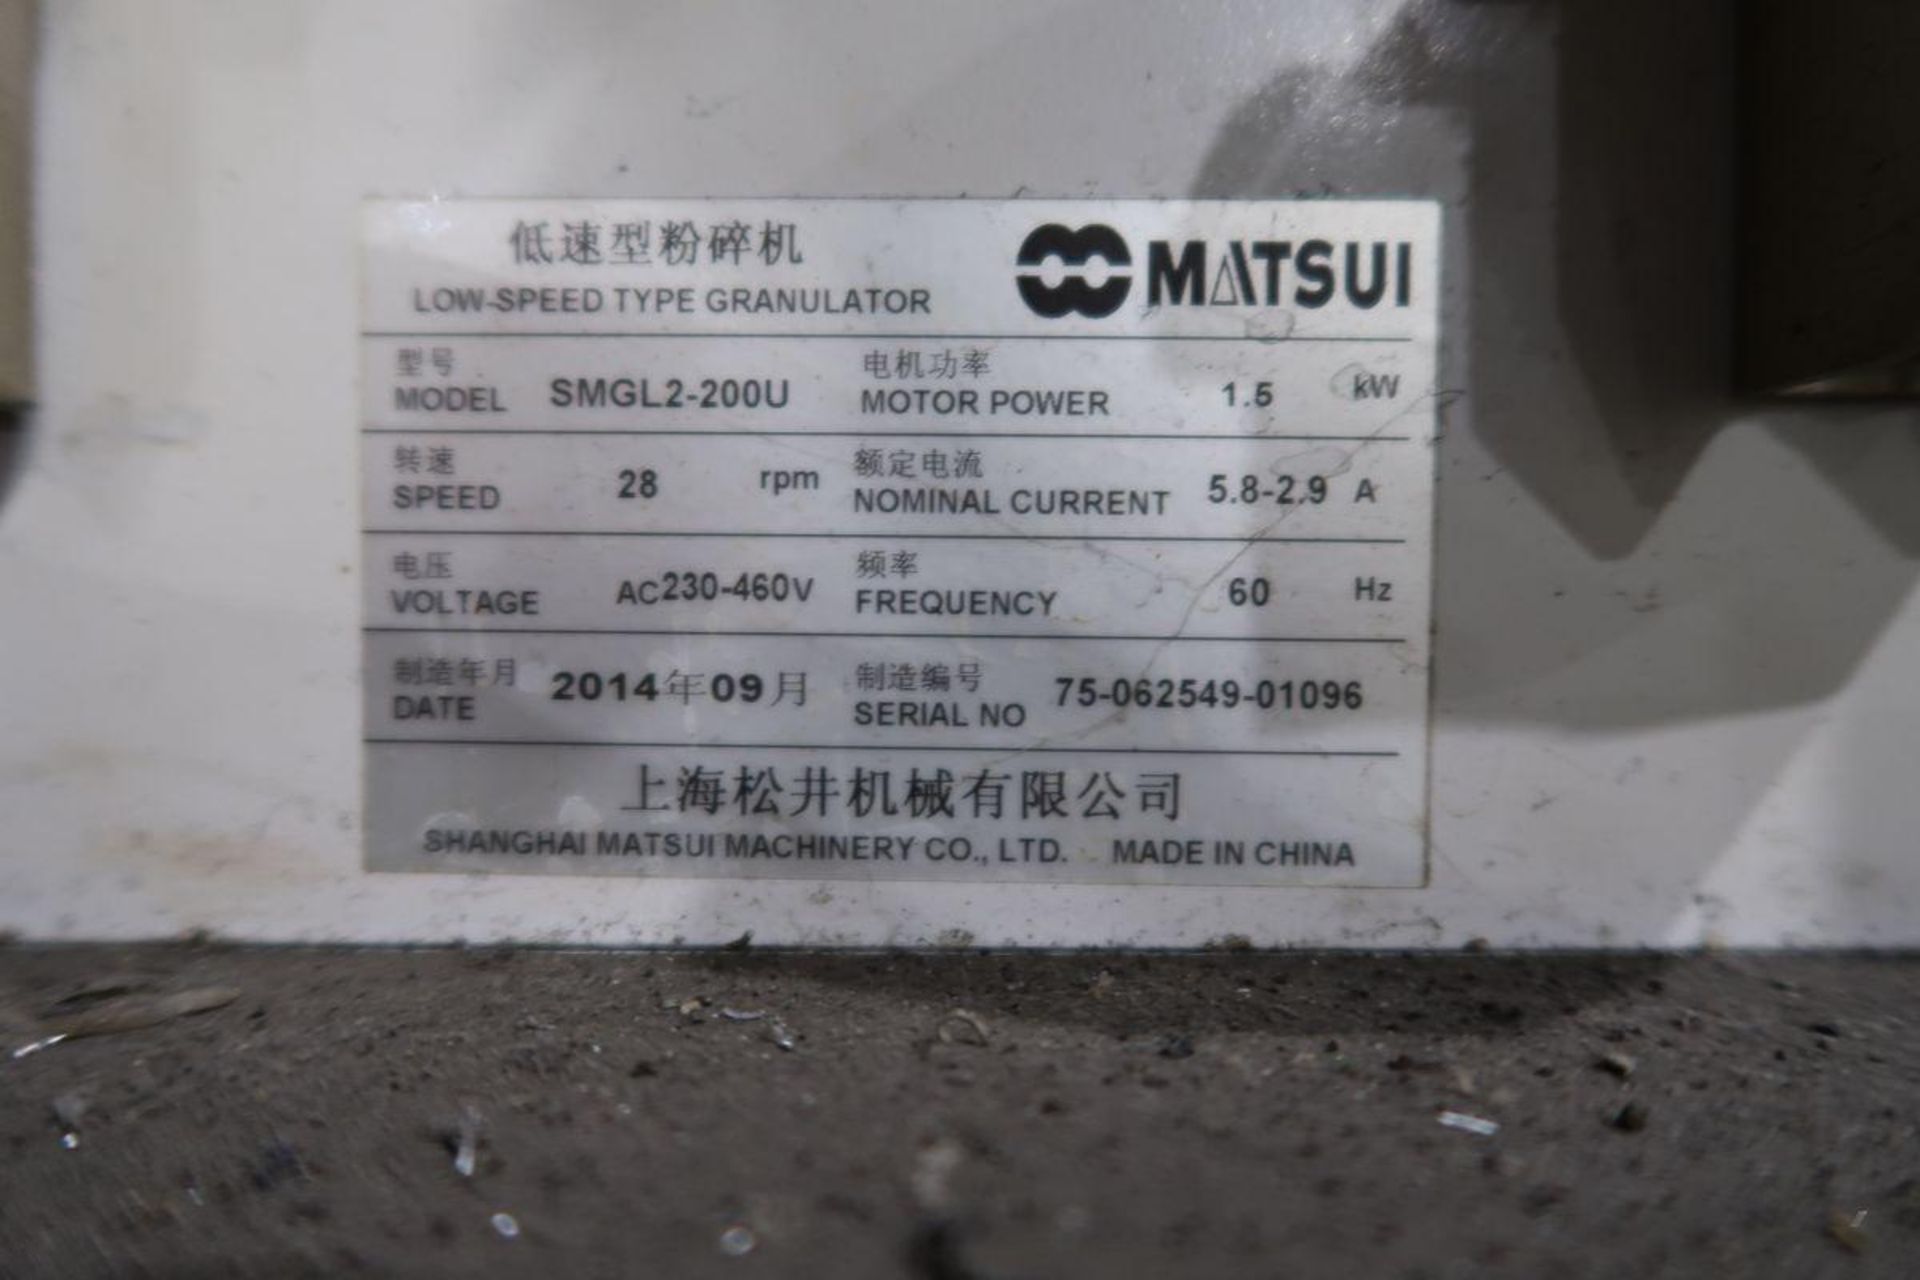 2014 Matsui SMGL2-200U Low-Speed Type Granulator - Image 3 of 3